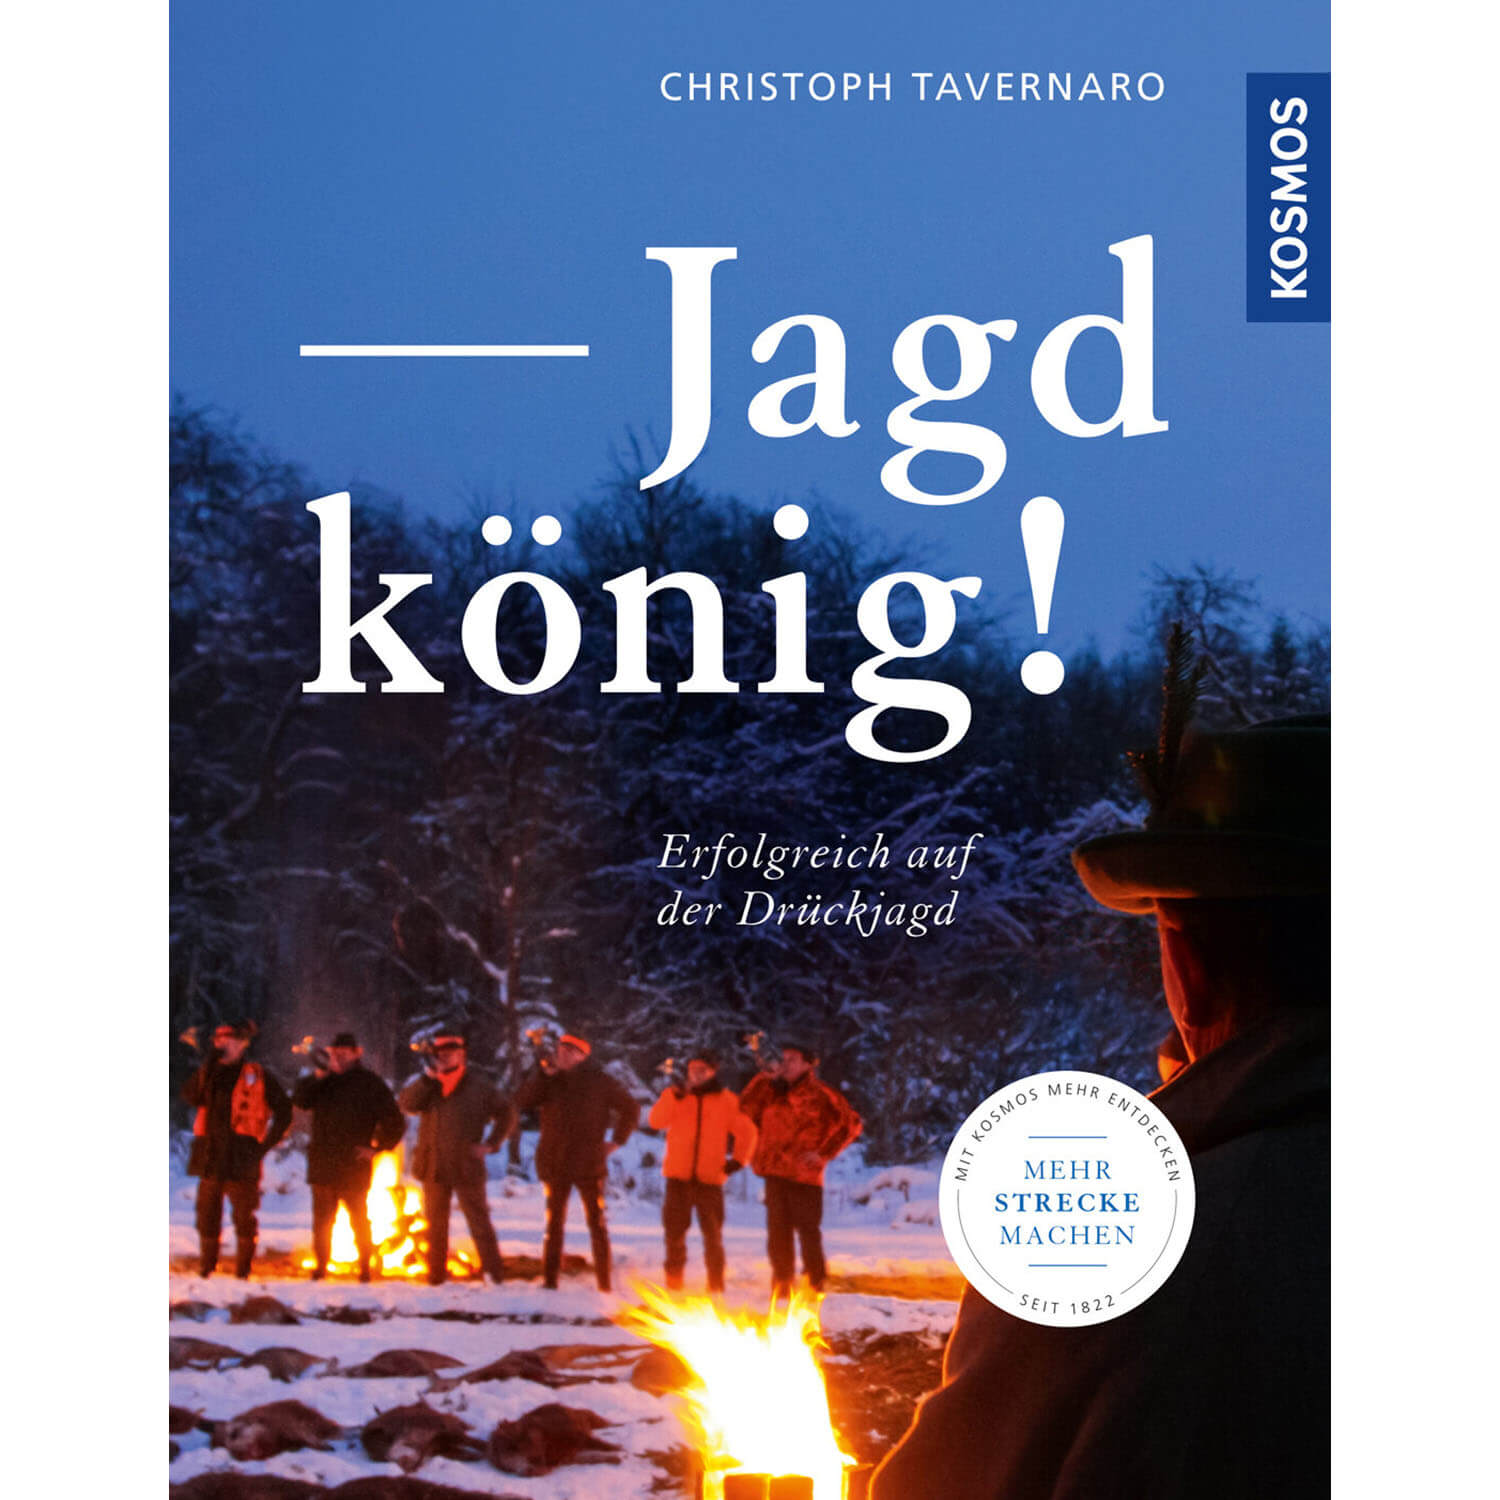 Jagdkönig! - Buch - Christoph Tavernaro - Jagdausrüstung